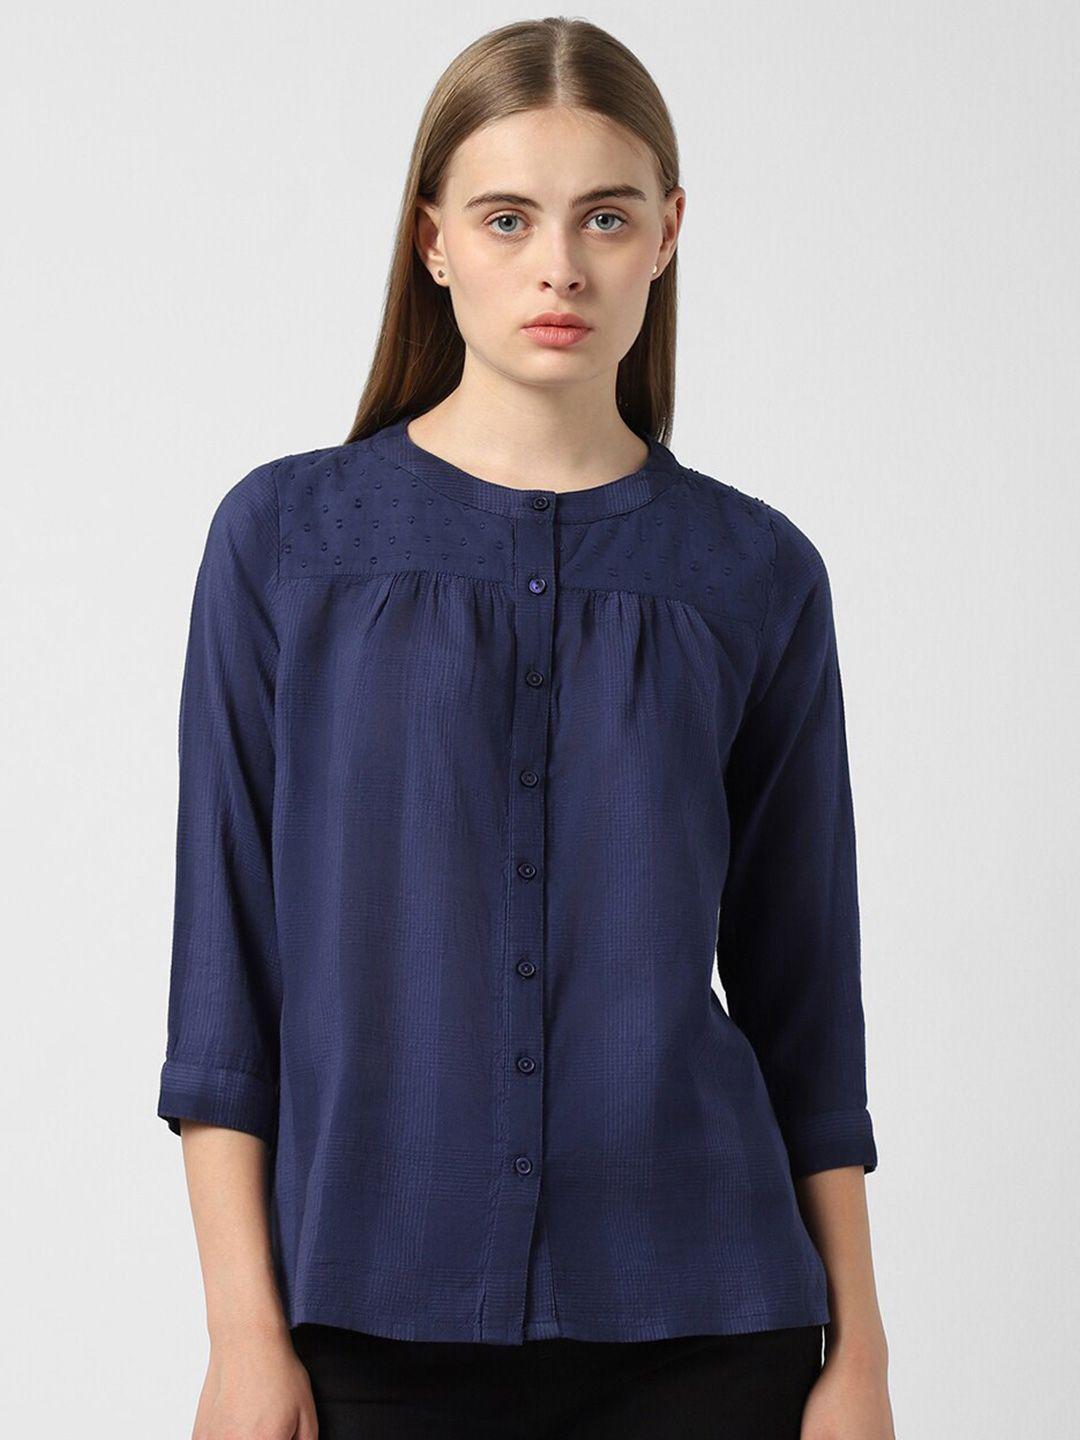 van-heusen-vertical-striped-mandarin-collar-bell-sleeves-pure-cotton-shirt-style-top